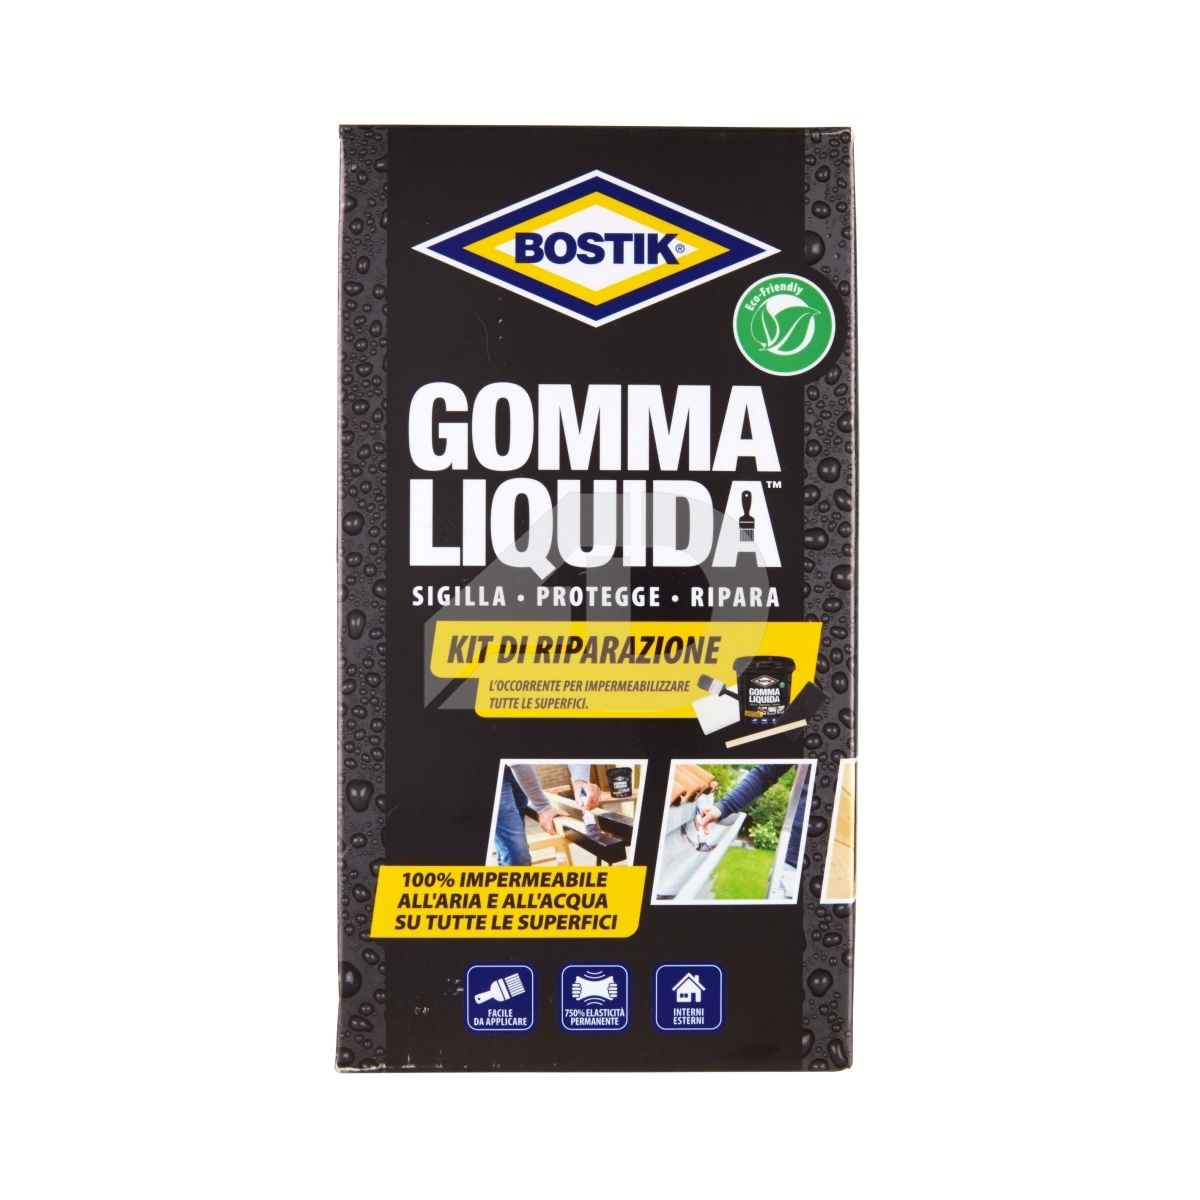 Gomma liquida Bostik 0,75 litri kit di riparazione D2072